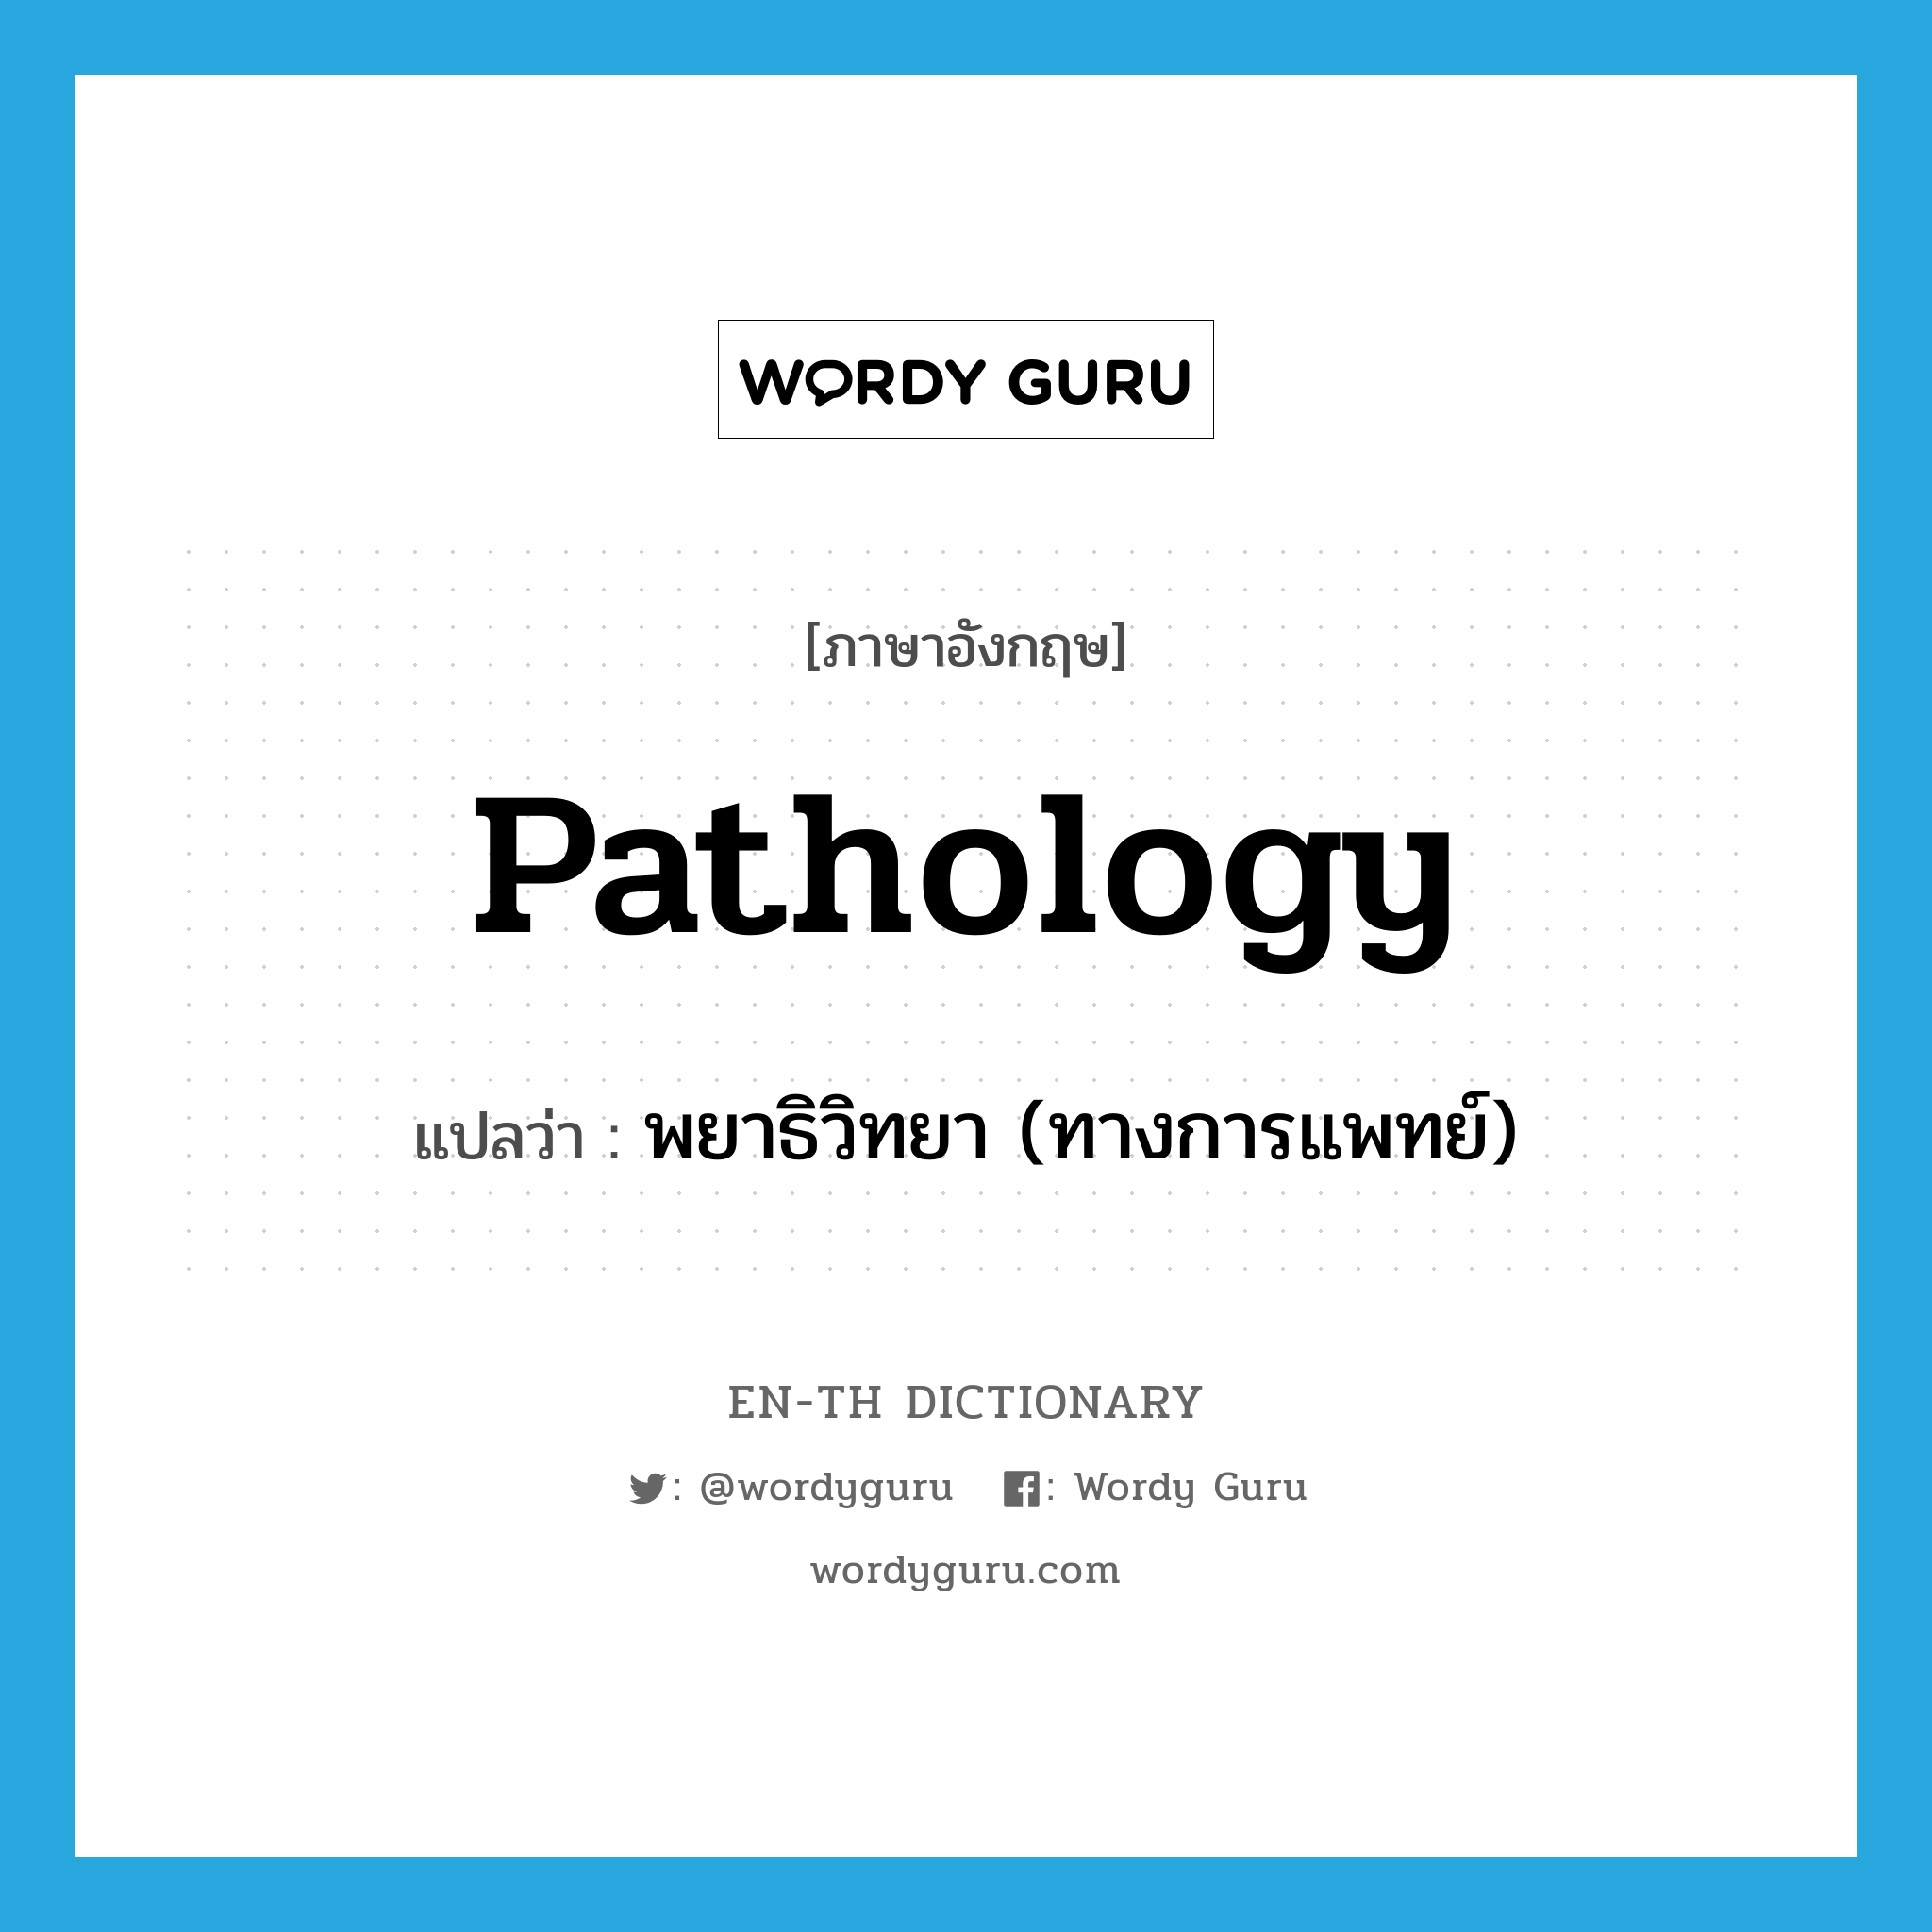 พยาธิวิทยา (ทางการแพทย์) ภาษาอังกฤษ?, คำศัพท์ภาษาอังกฤษ พยาธิวิทยา (ทางการแพทย์) แปลว่า pathology ประเภท N หมวด N